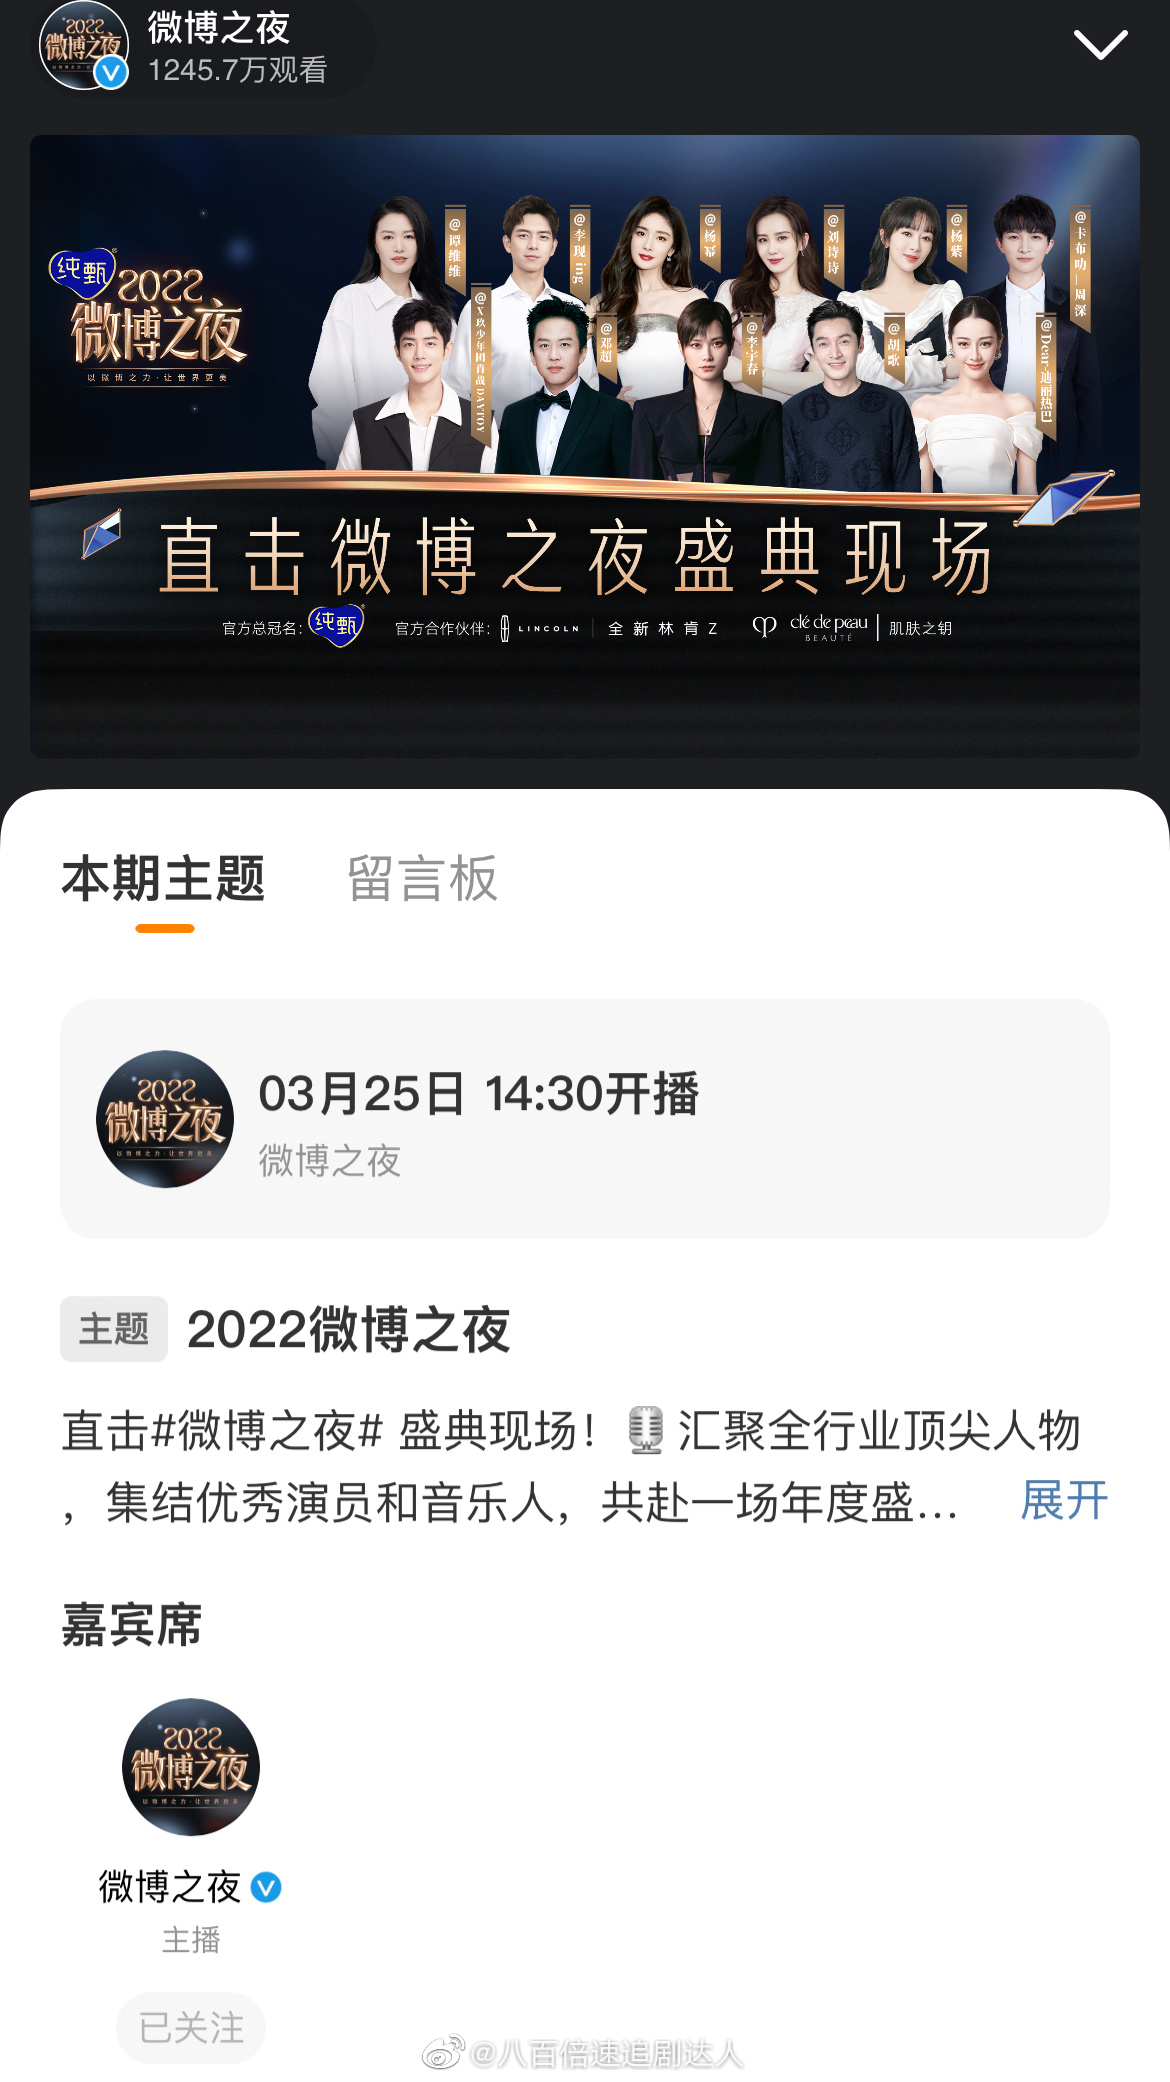 今日微博之夜官宣了迪丽热巴和杨紫的官方宣传图……